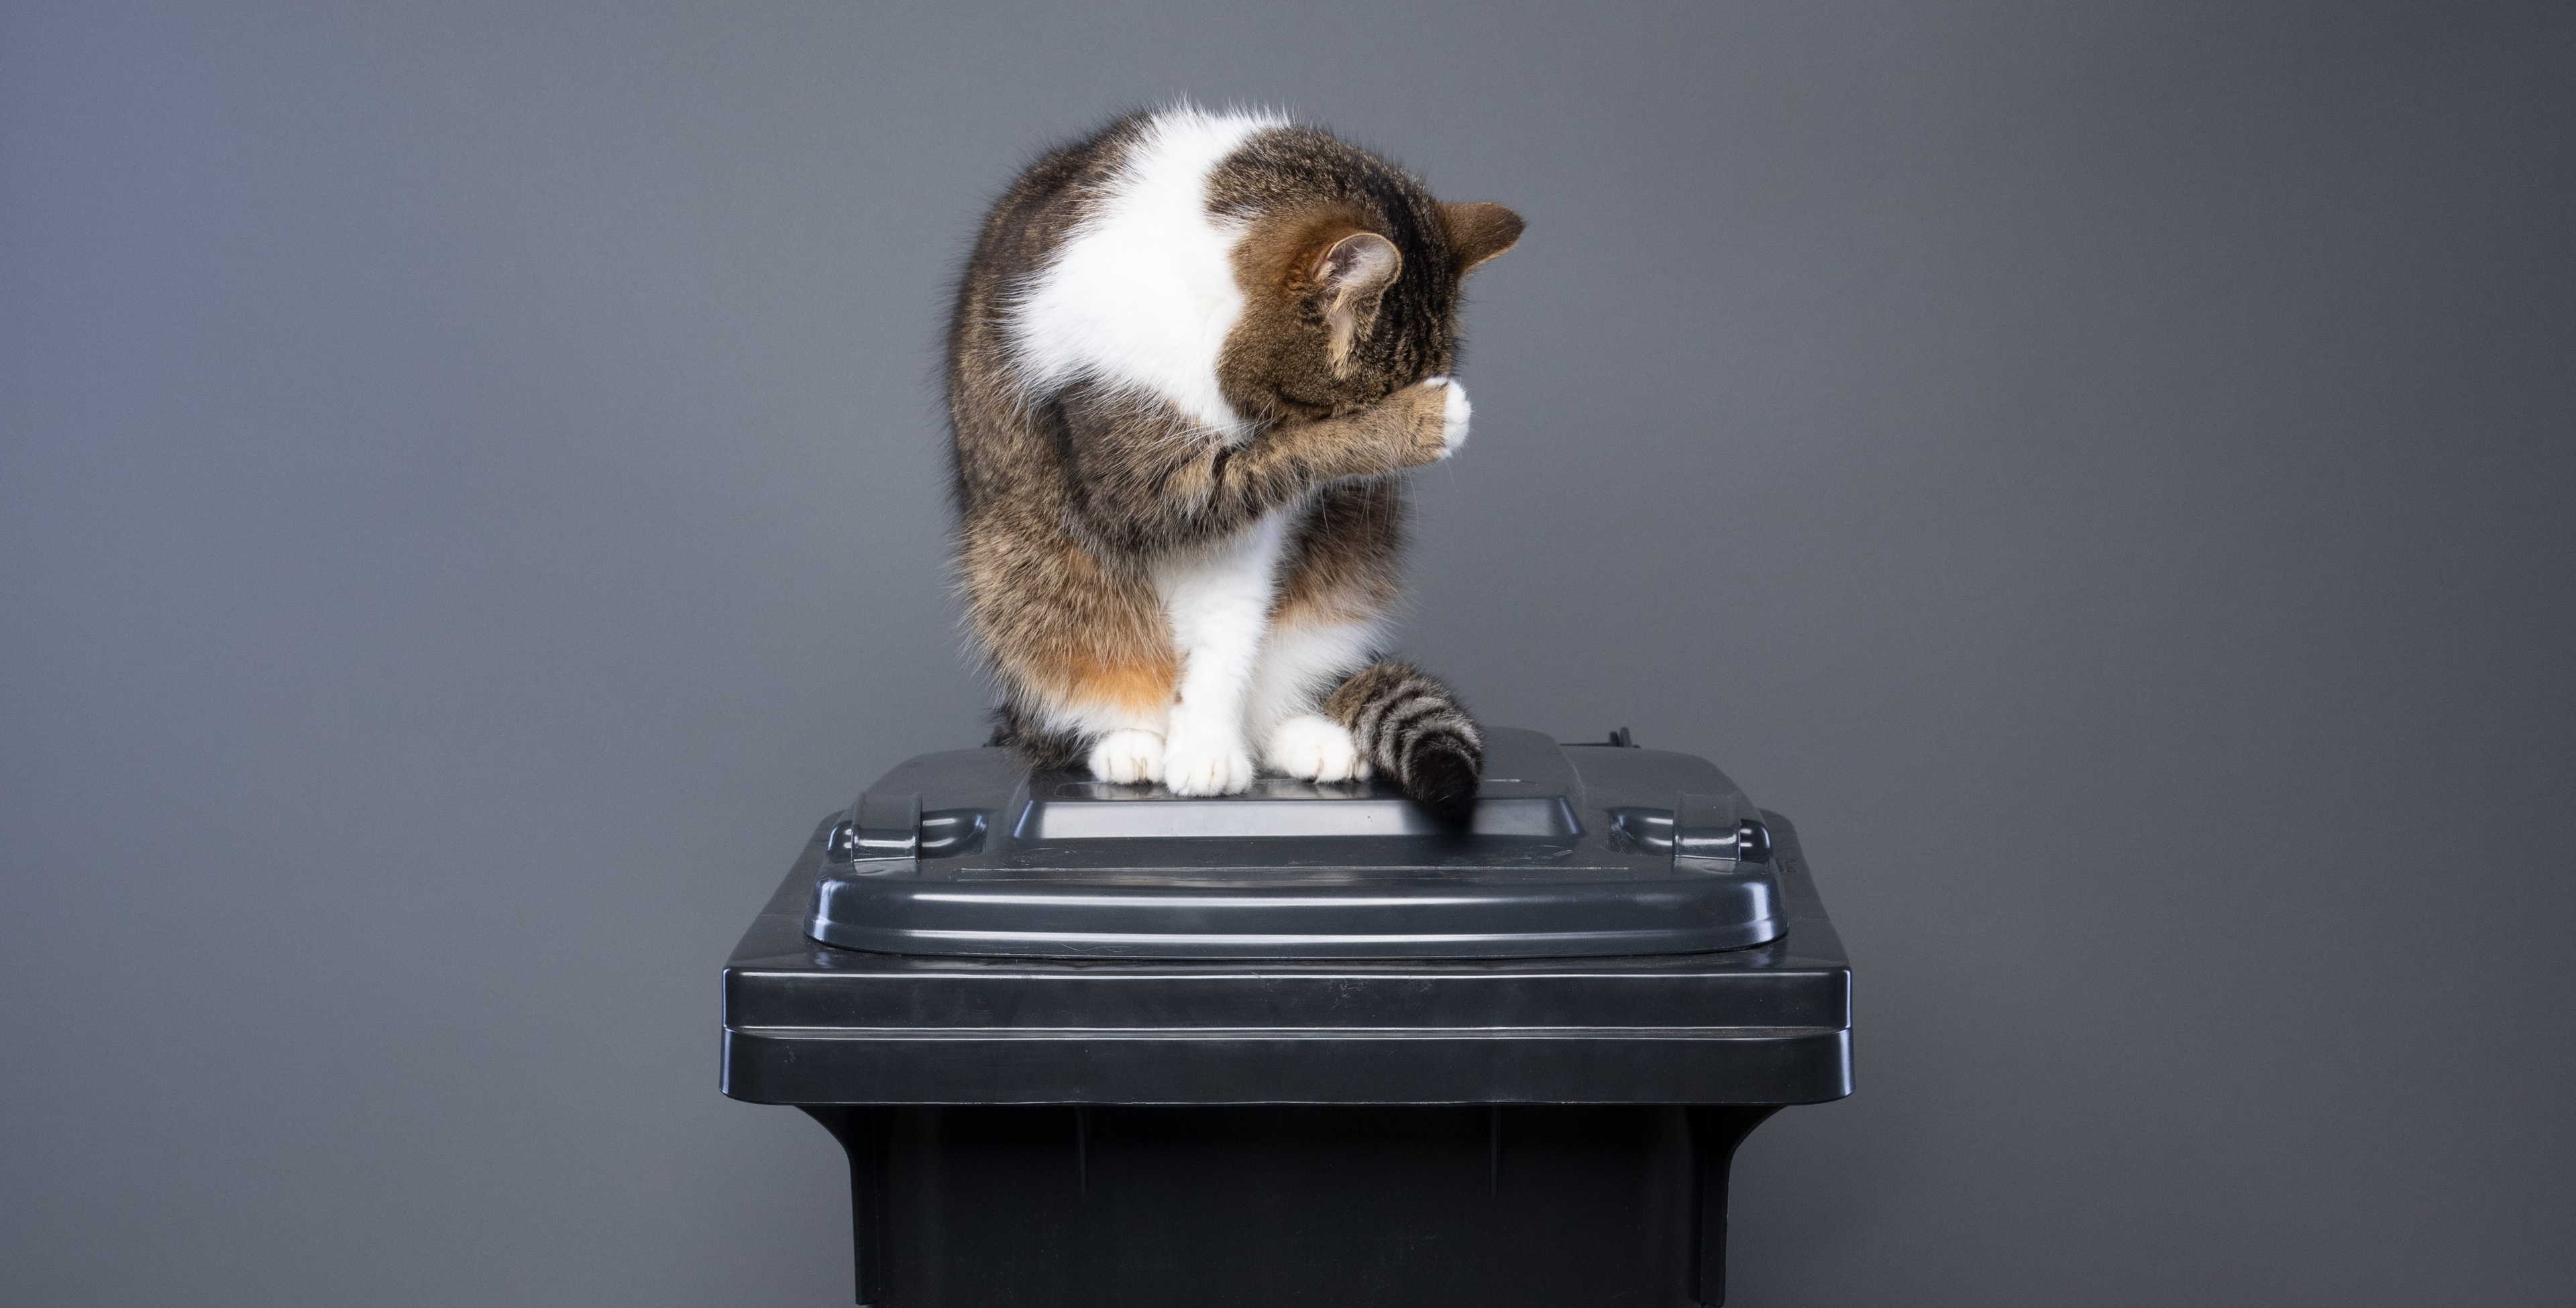 Müllaufkommen durch Katzenstreu drastisch reduzieren - Mehrheit der Deutschen laut Umfrage für Wechsel zu pflanzlicher Katzenstreu